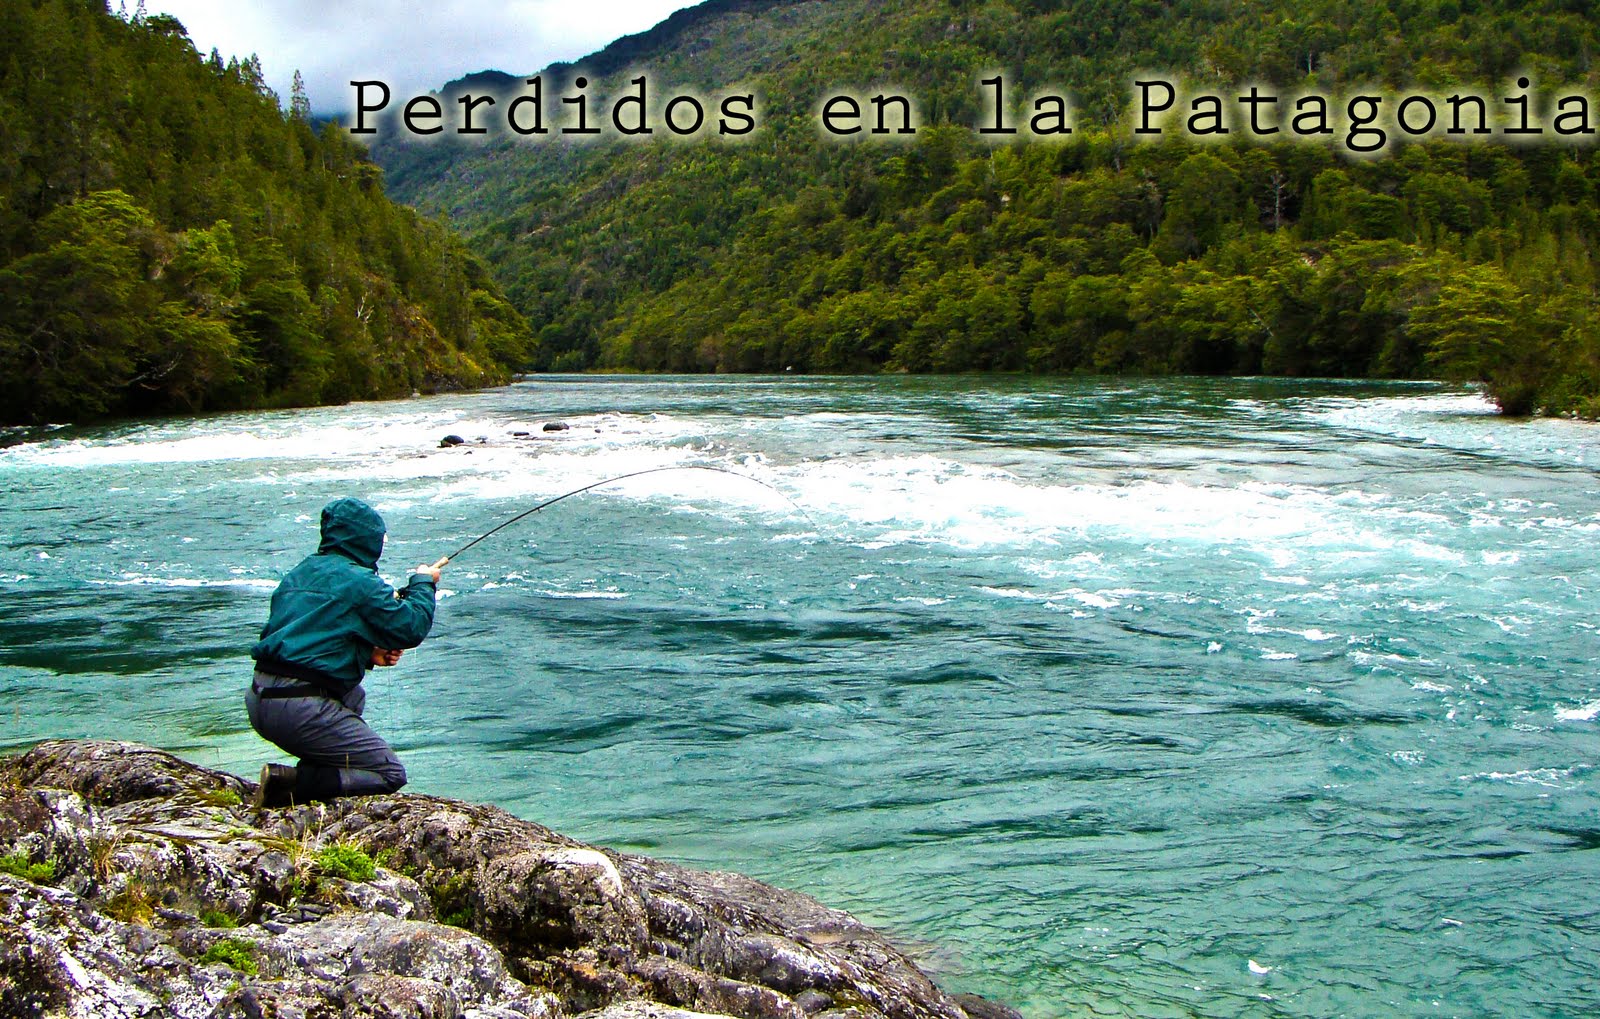 Perdidos en la Patagonia